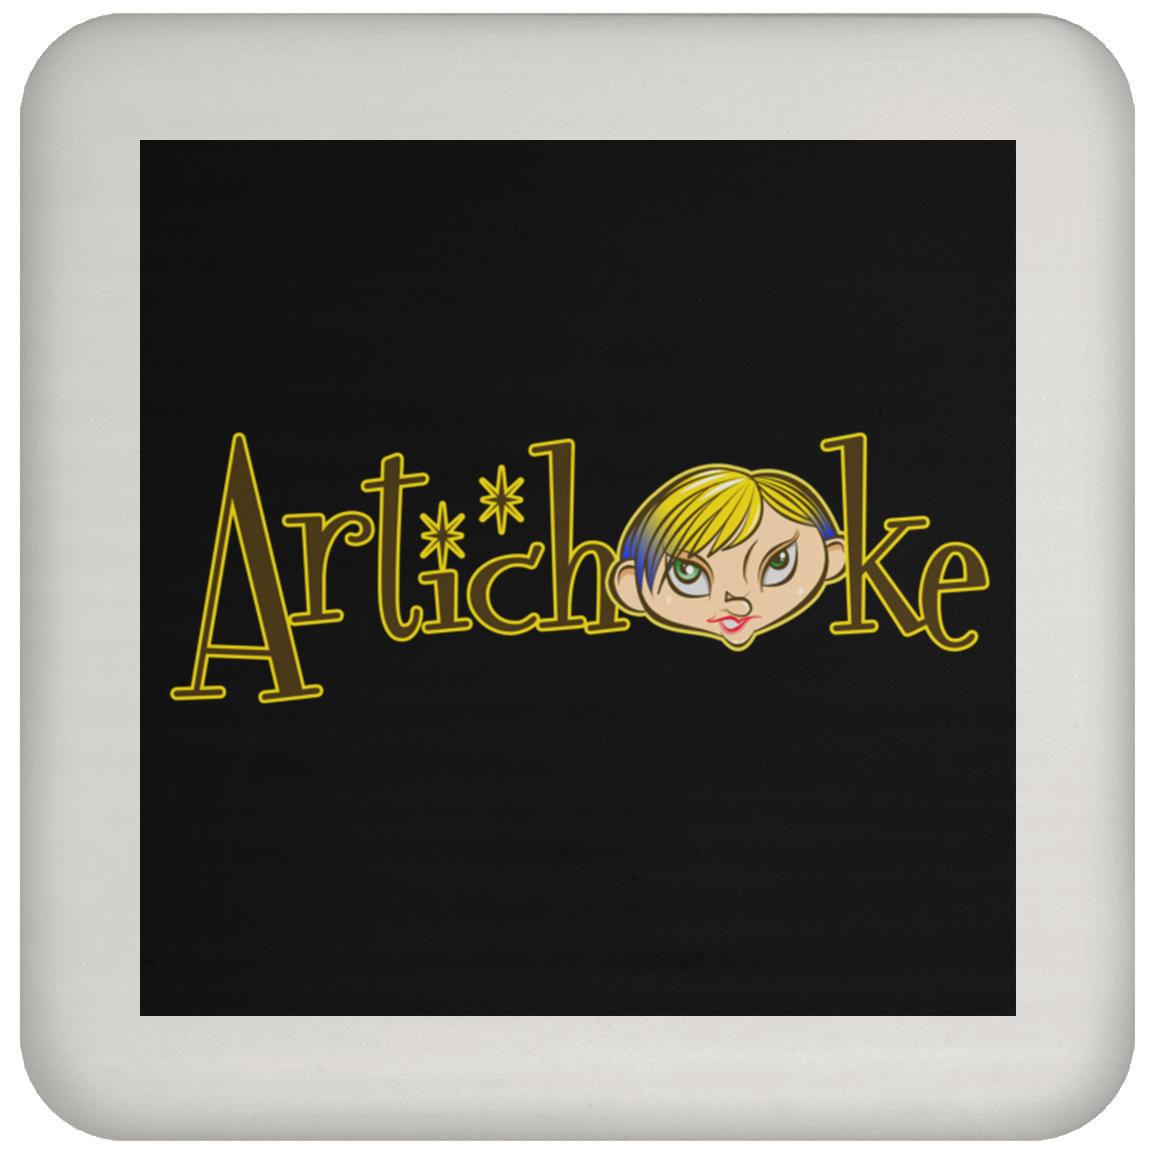 ArtichokeUSA custom design with text #18. Coaster